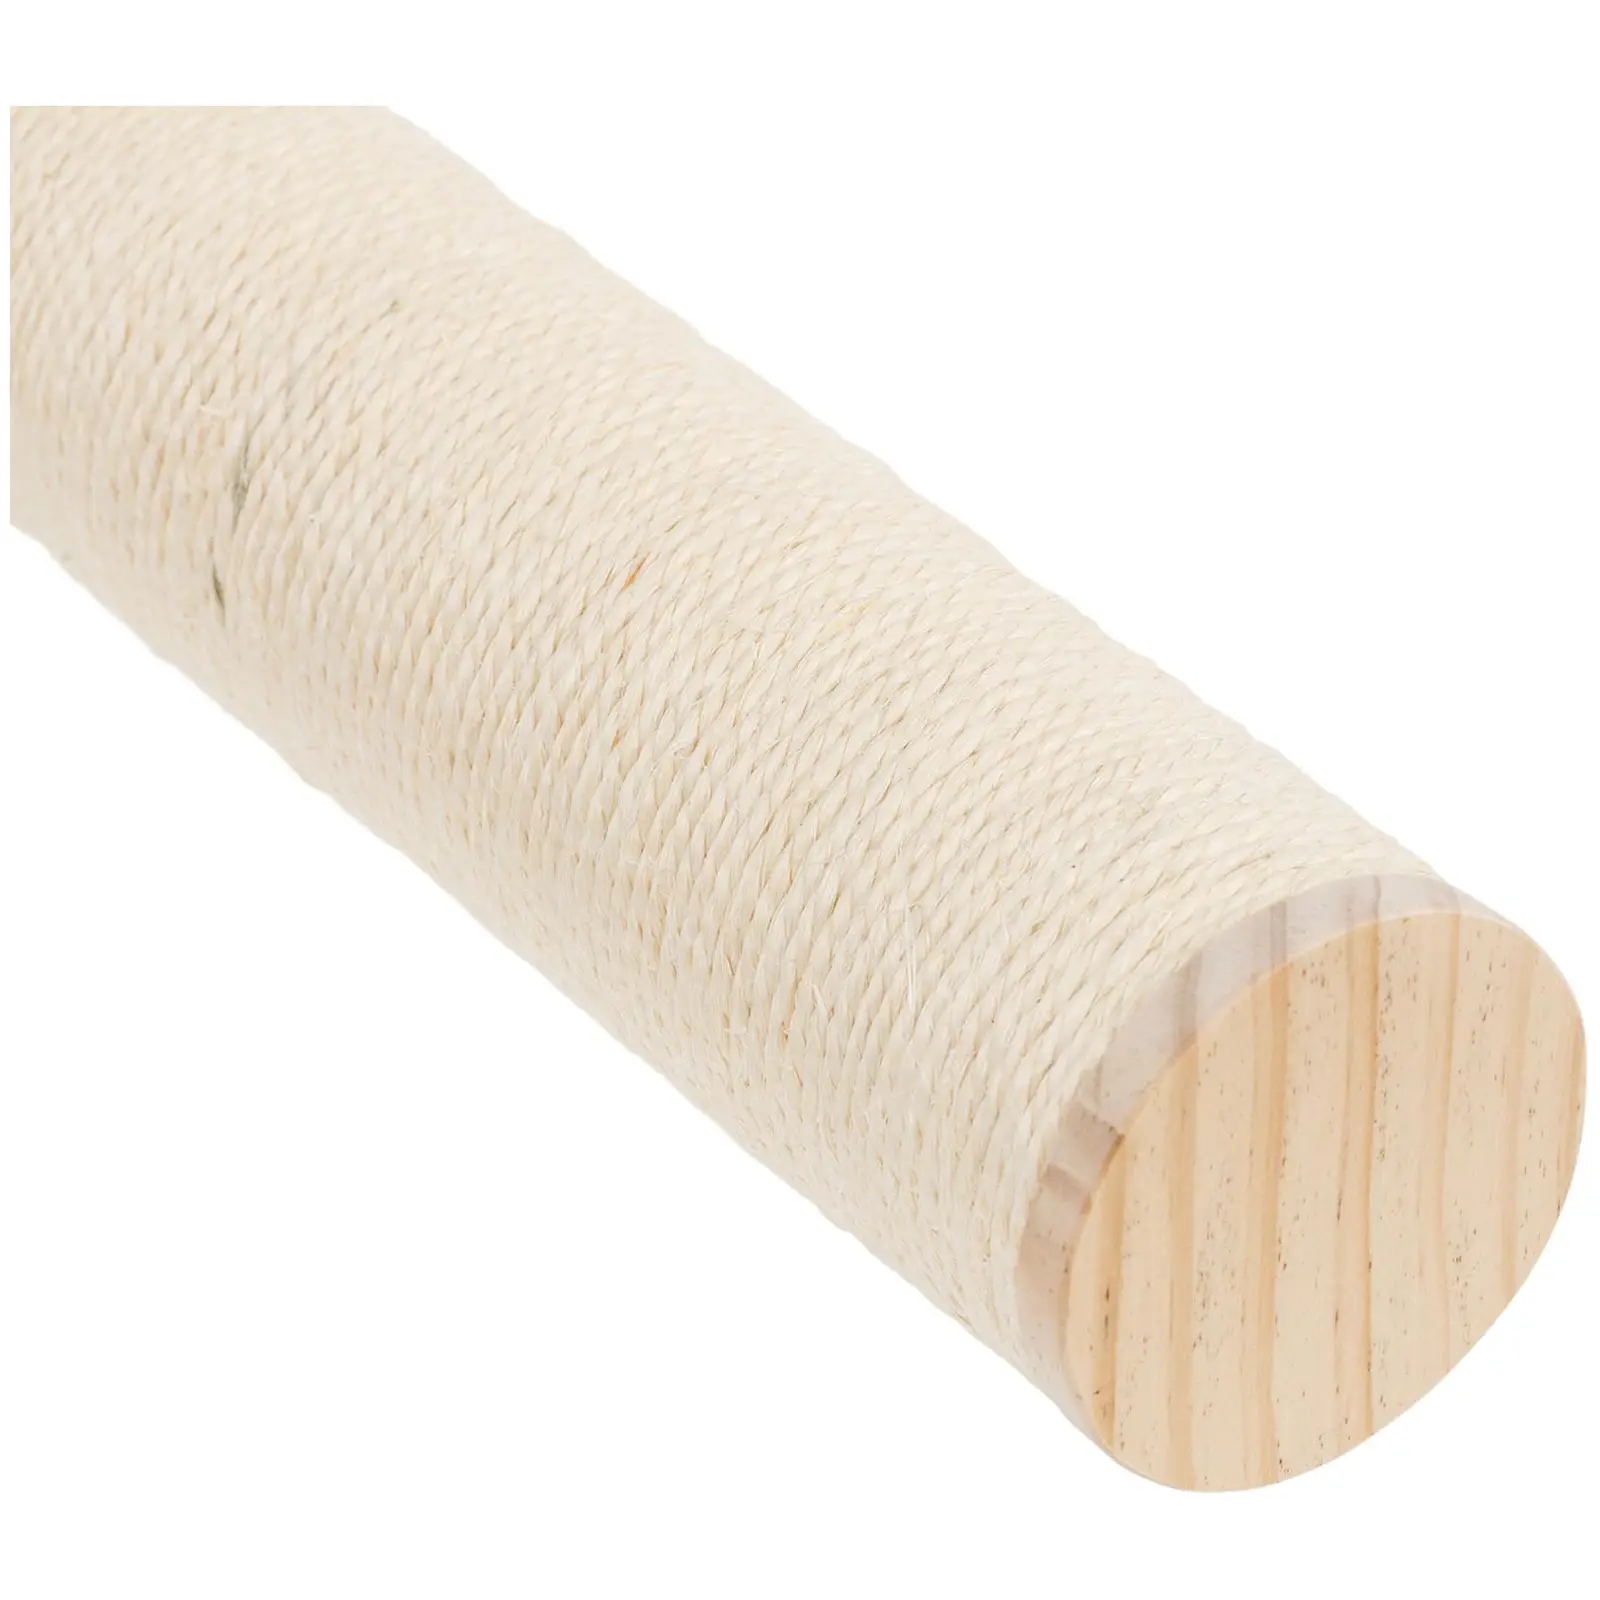 Cama de rede para gatos com degraus - 2 vigas - madeira / sisal / tecido